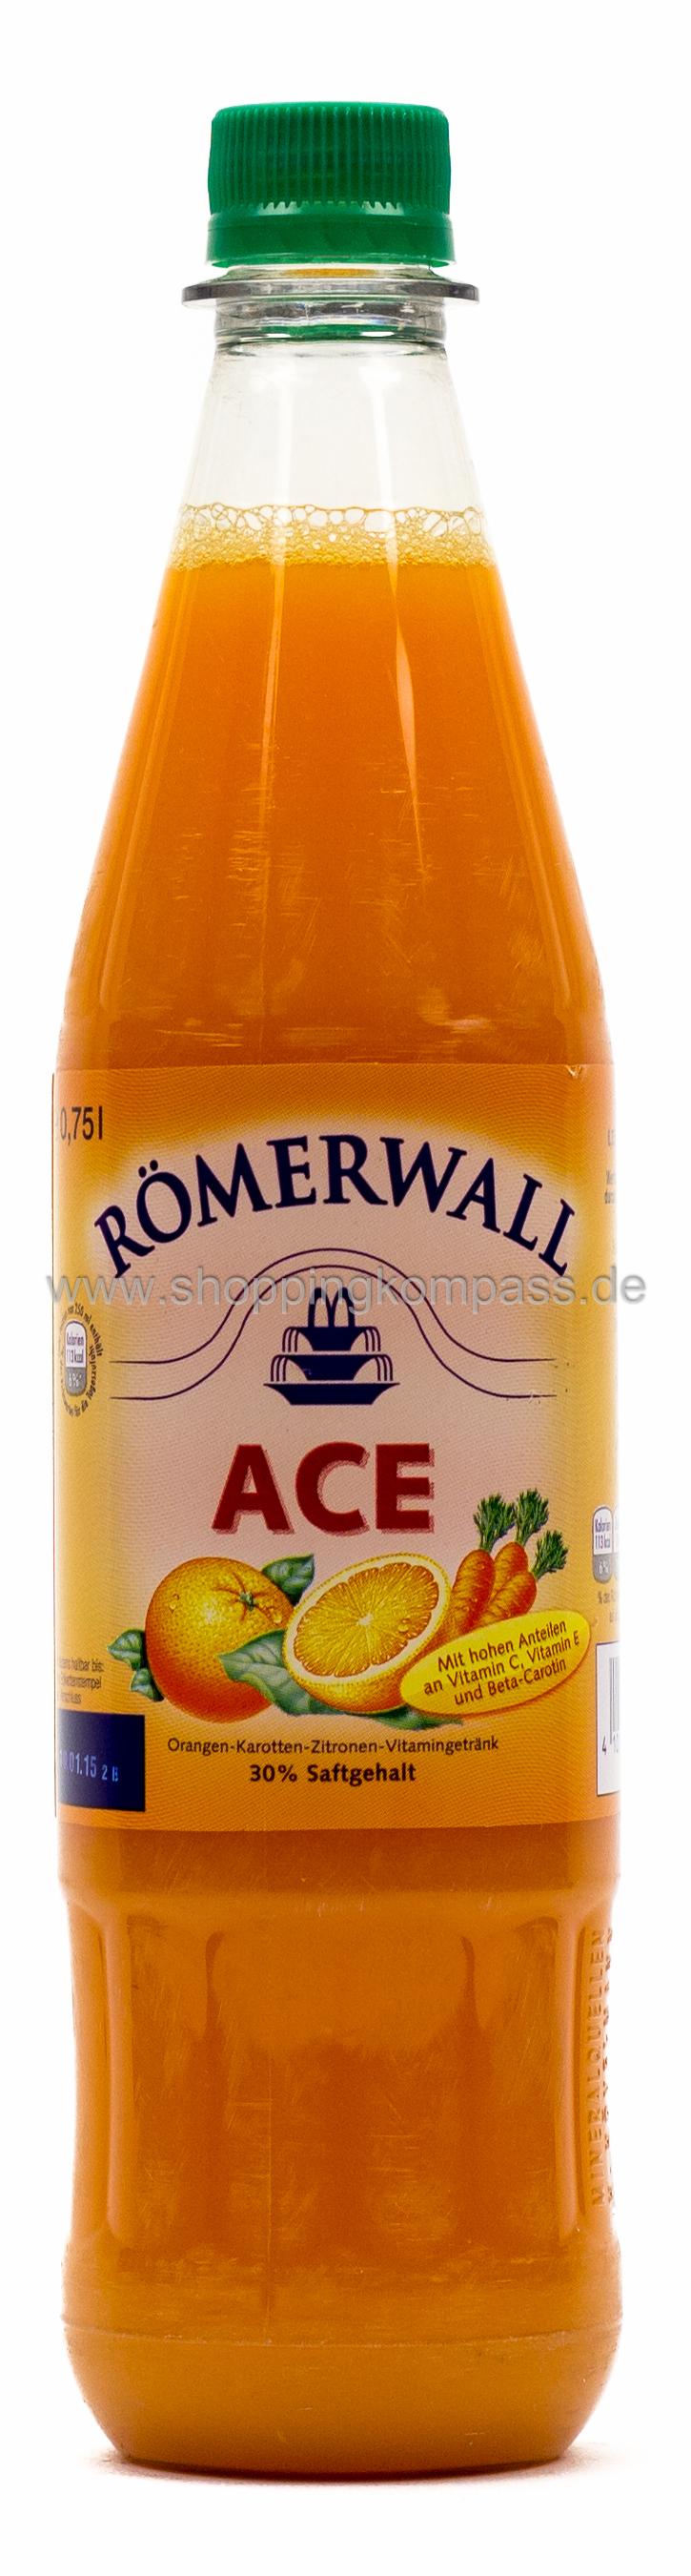 Römerwall ACE Orange Karotte Kasten 12 x 0,75 l PET Mehrweg